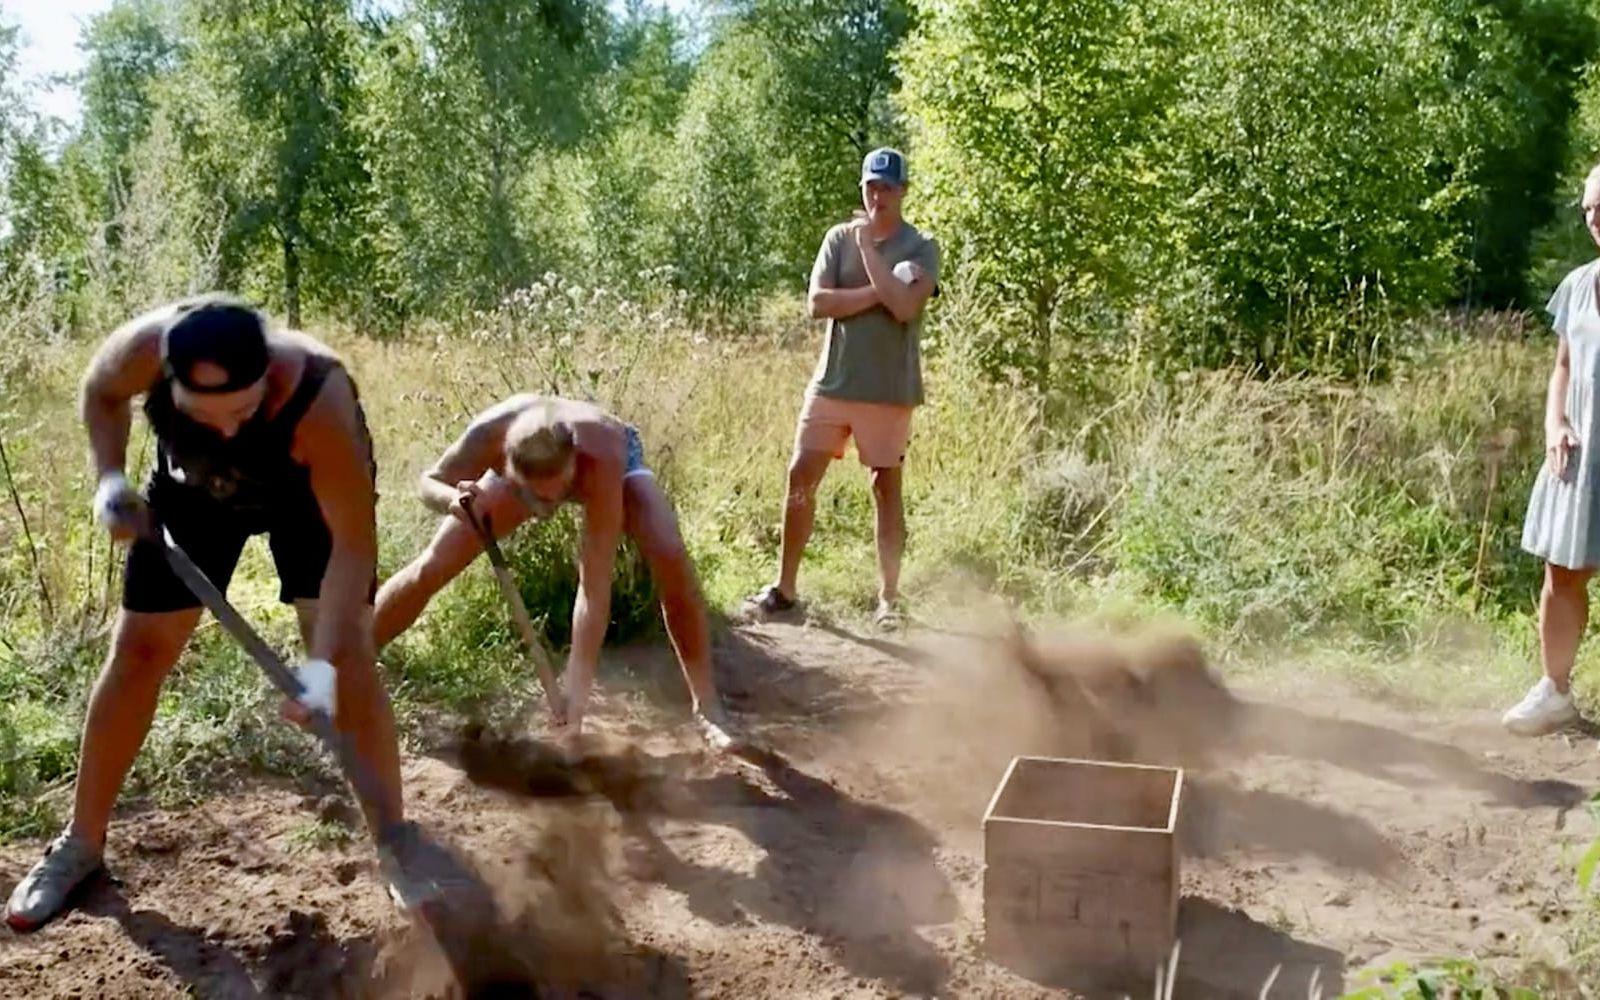 I semifinalen skulle Artin och Viktor snabbast gräva upp en sten ur jorden.